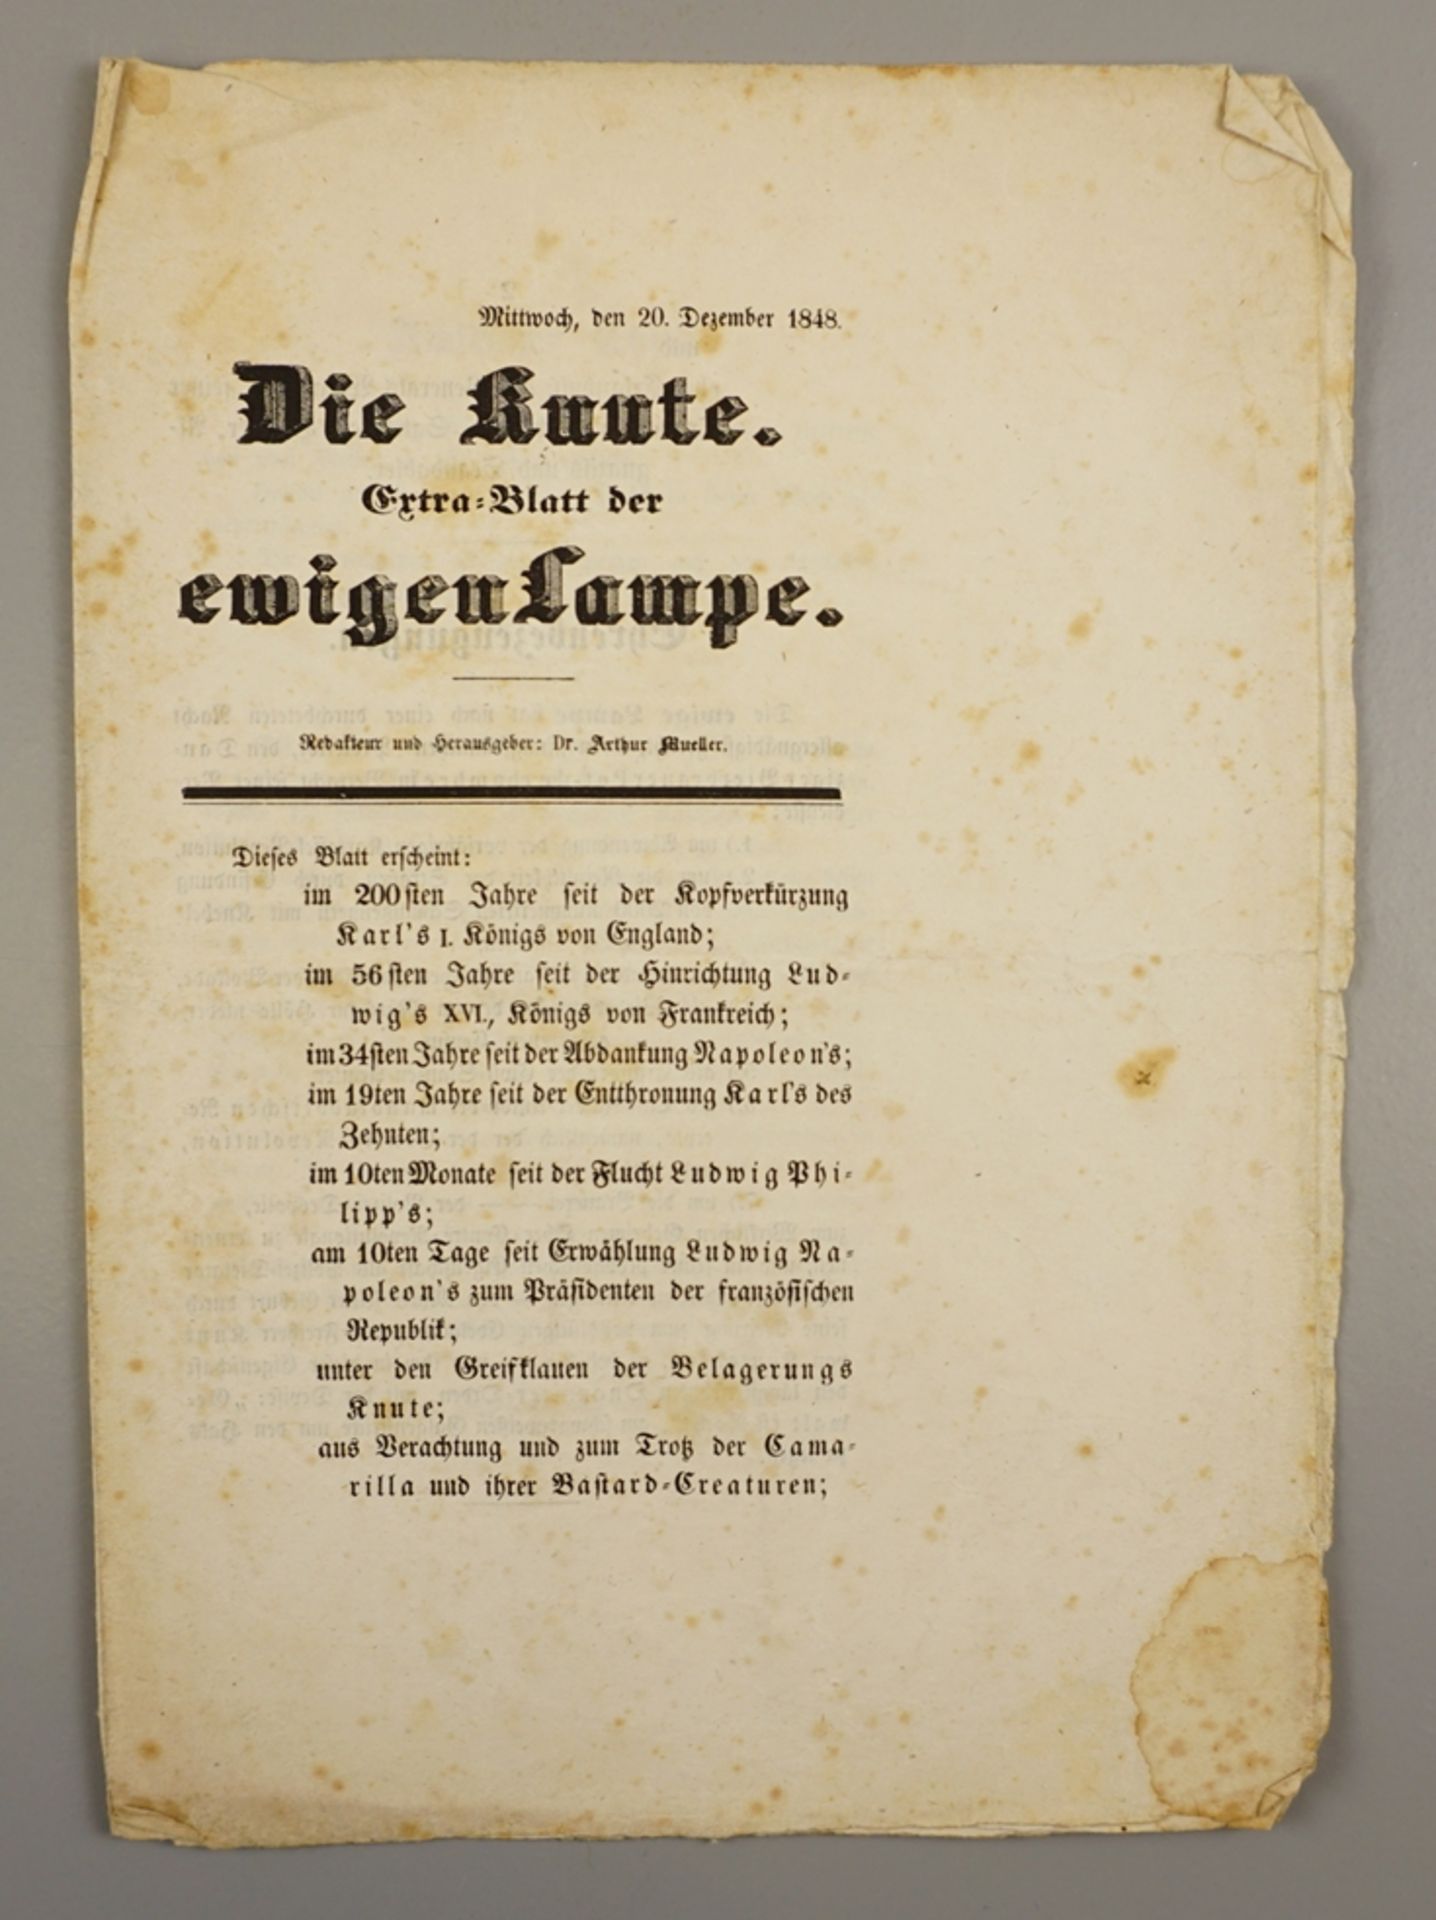 "Die Knute" - Extra-Blatt der ewigen Lampe", 20.Dezember 1848, äußerst selten